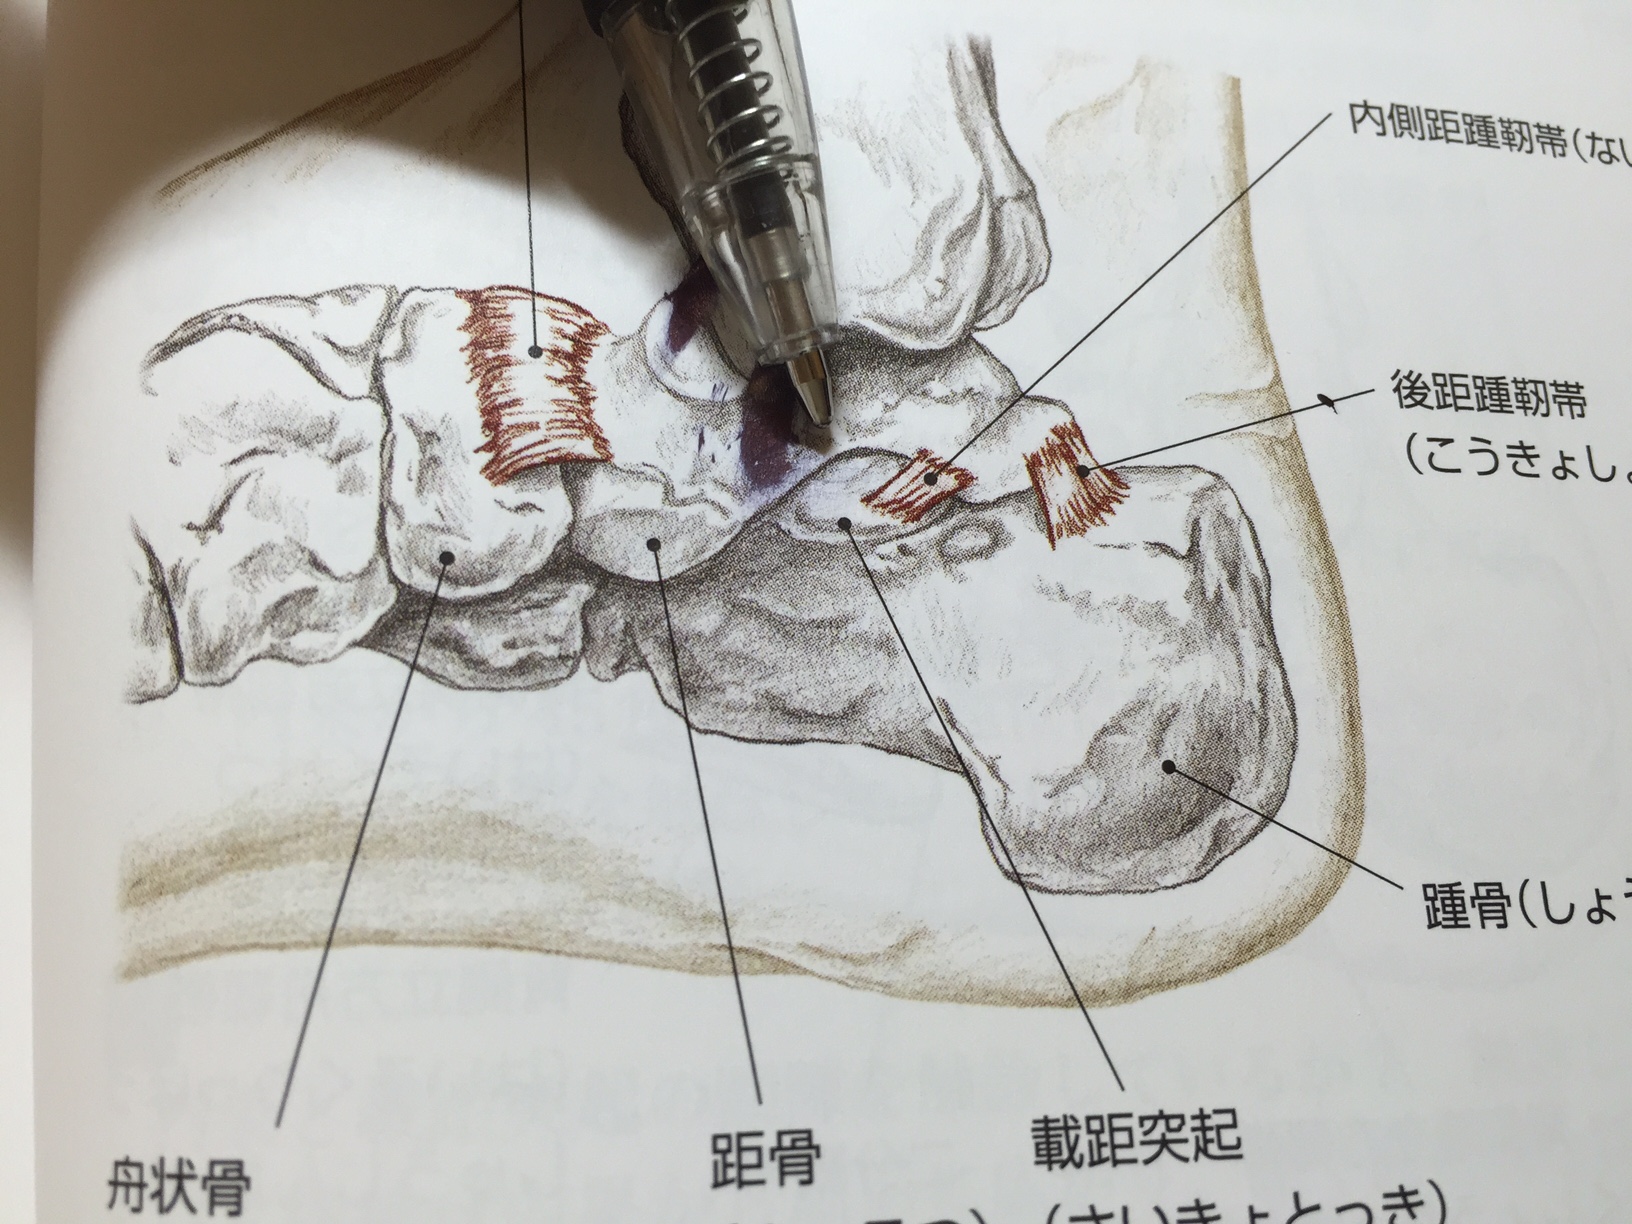 足底の靭帯の数も多い 解剖実習アカデミー